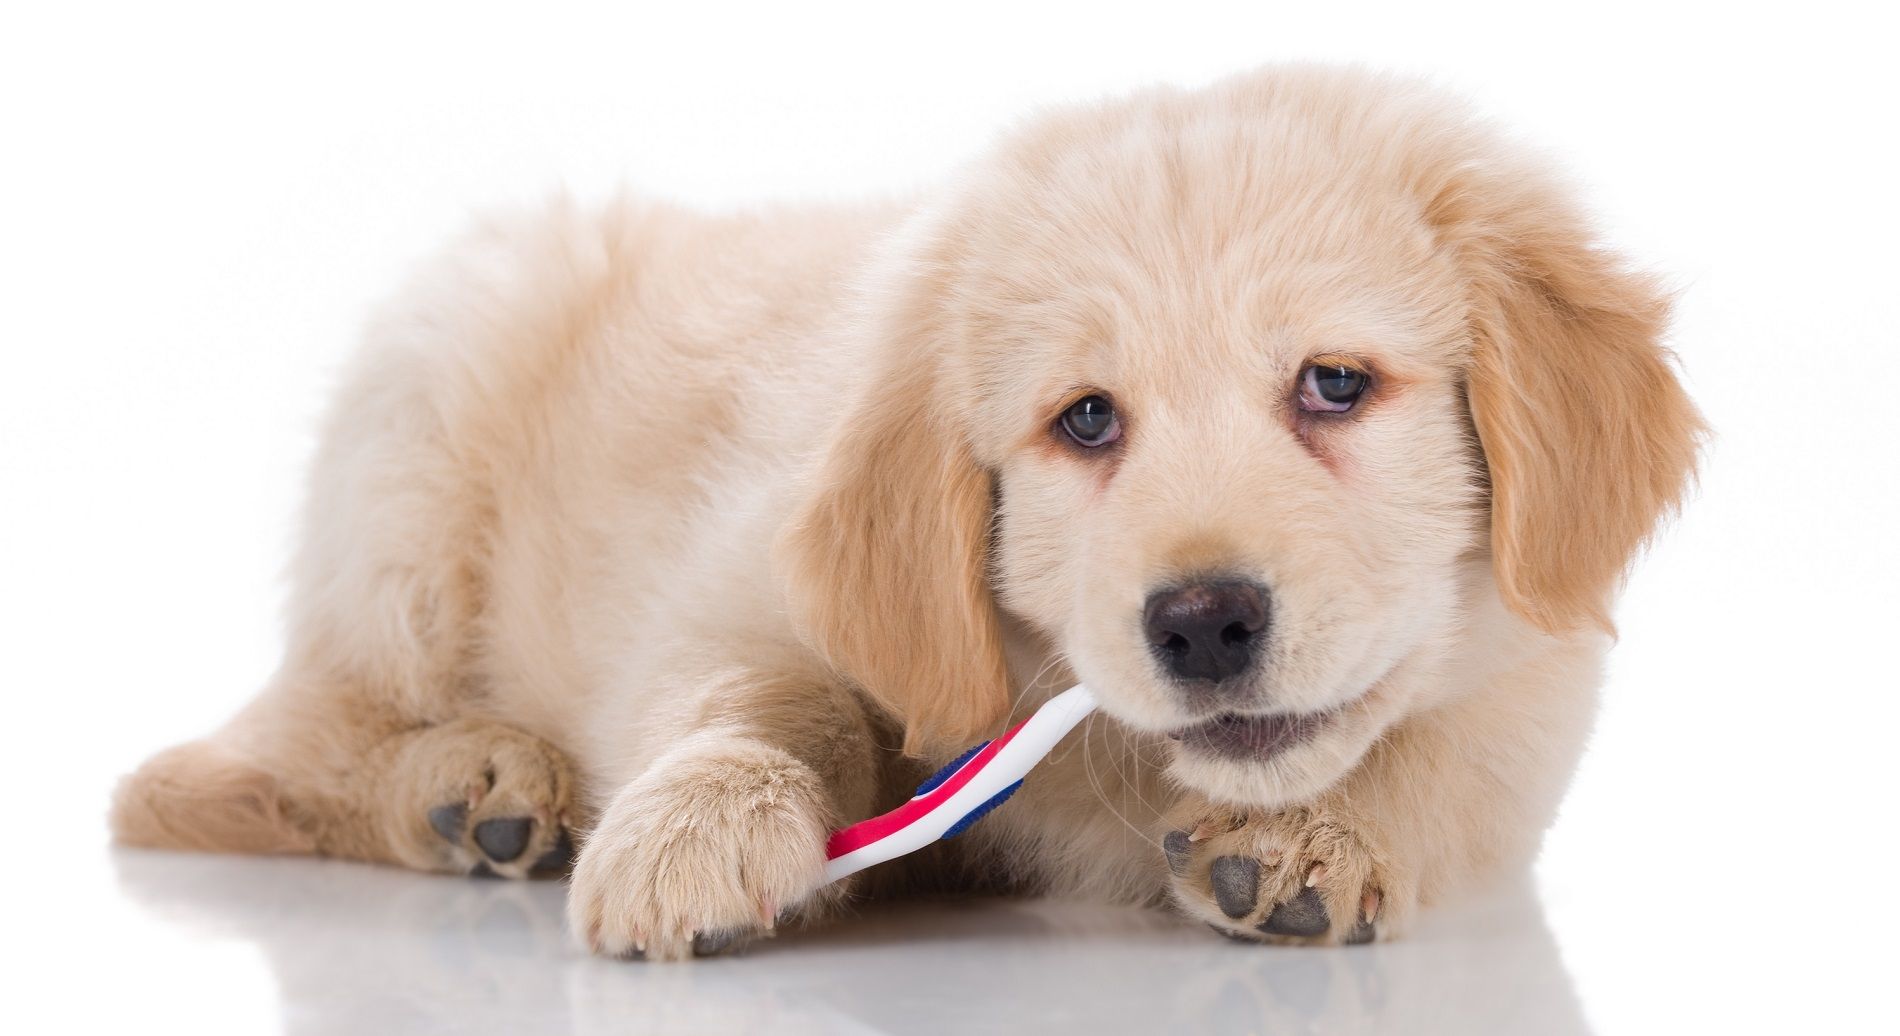 Attenti allo xilitolo dei dentifrici: può essere letale per i cani